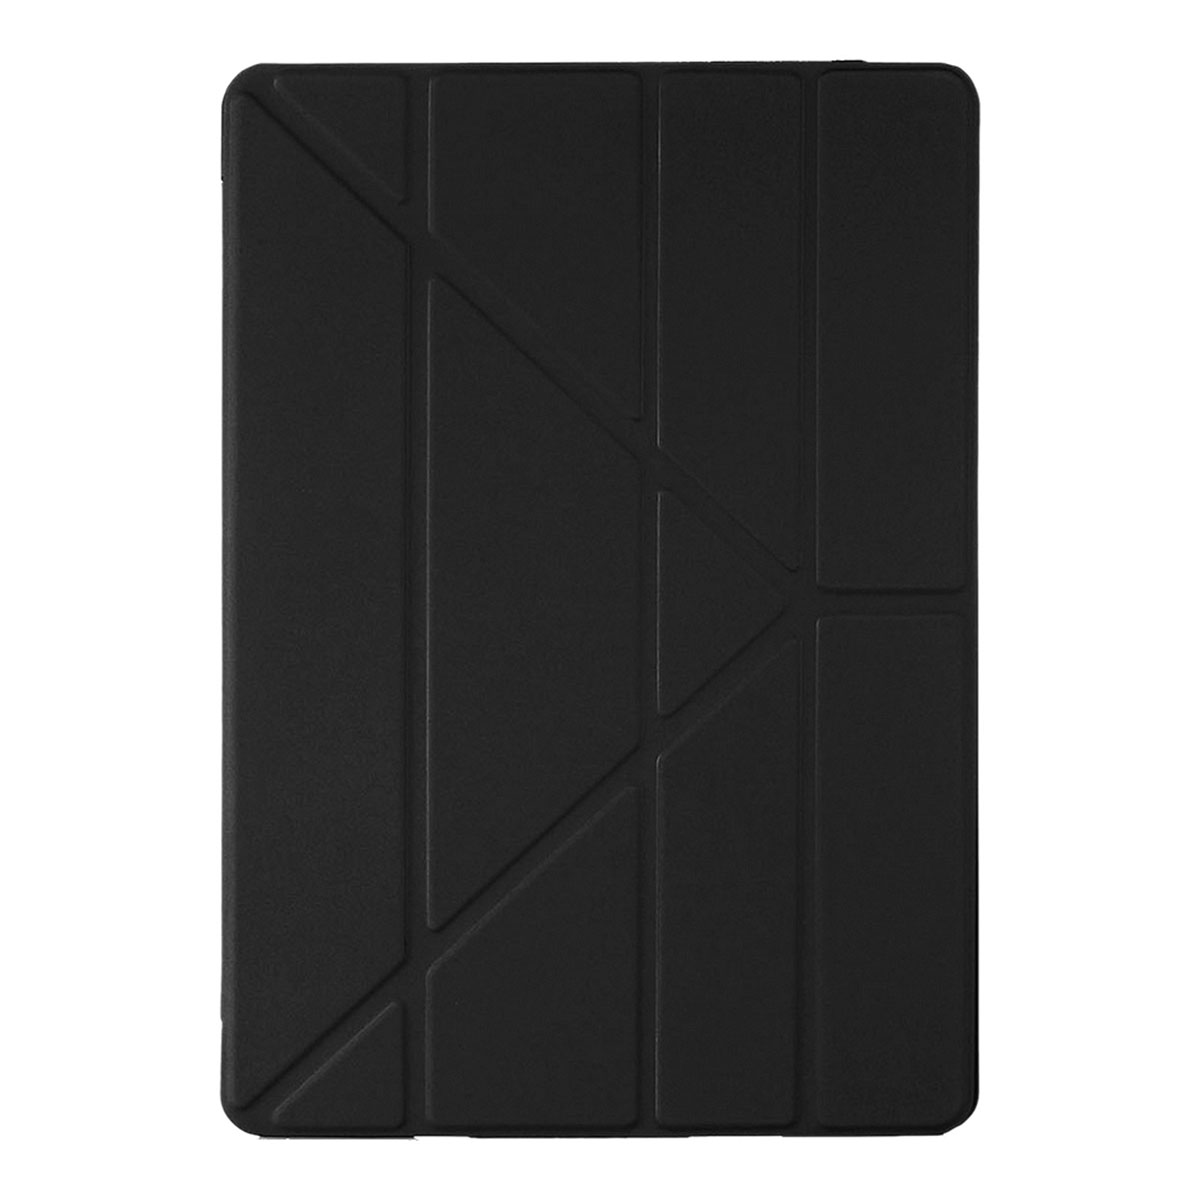 Чехол книжка iBox для планшета SAMSUNG Galaxy TAB S7 Plus (SM-T975), диагональ 12.4", с отсеком для стилуса, цвет черный